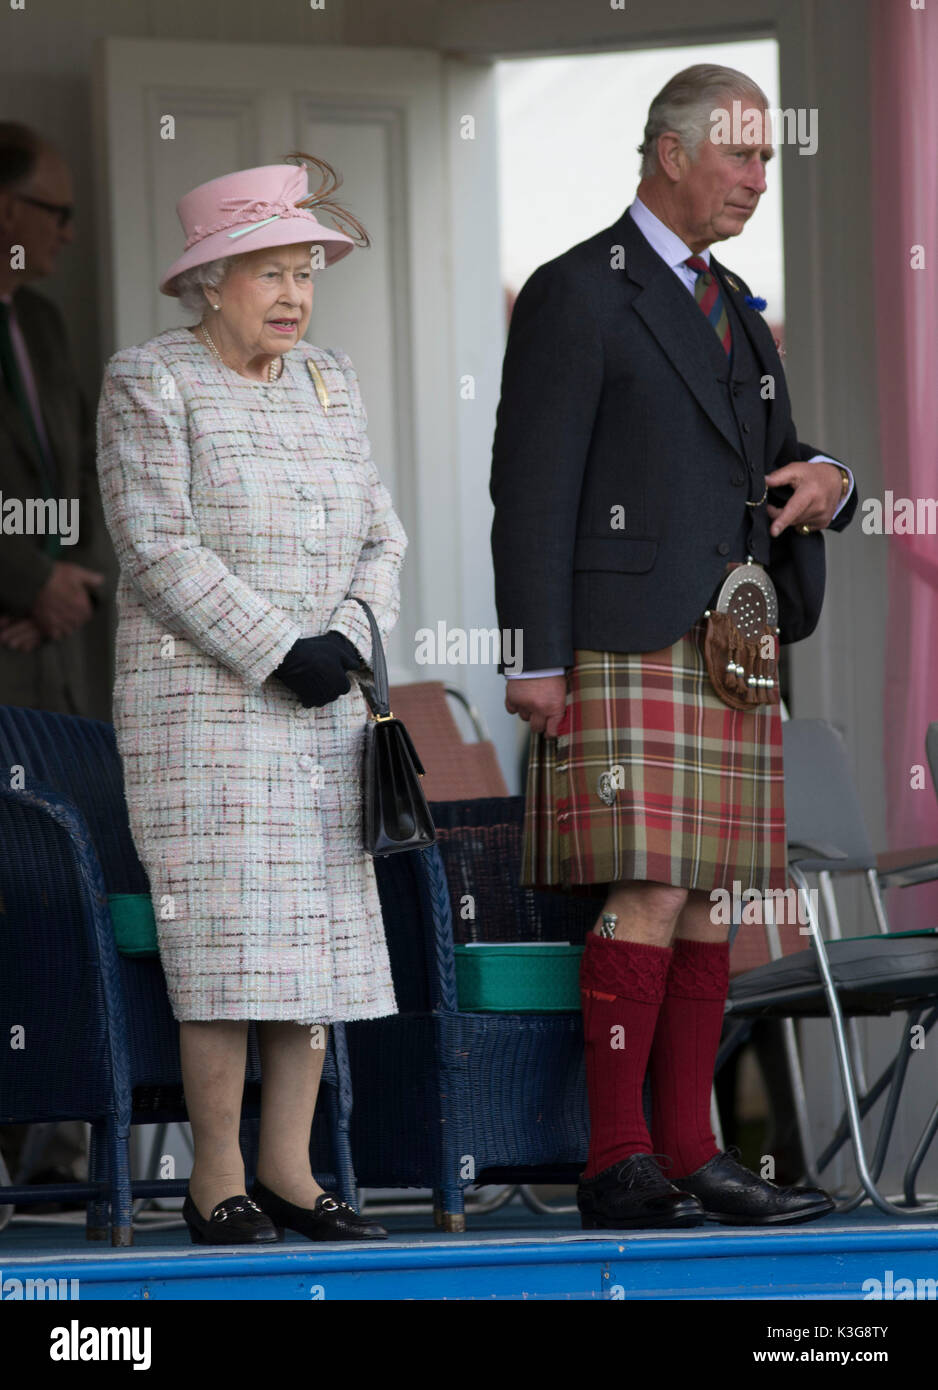 Londres, Reino Unido. 3 Sep, 2017. British Queen Elizabeth II 2017 asiste a la reunión anual de Braemar, un tradicional escocés Highland Games en Braemar, Escocia, el 2 de septiembre de 2017. Crédito: Xinhua/Alamy Live News Foto de stock